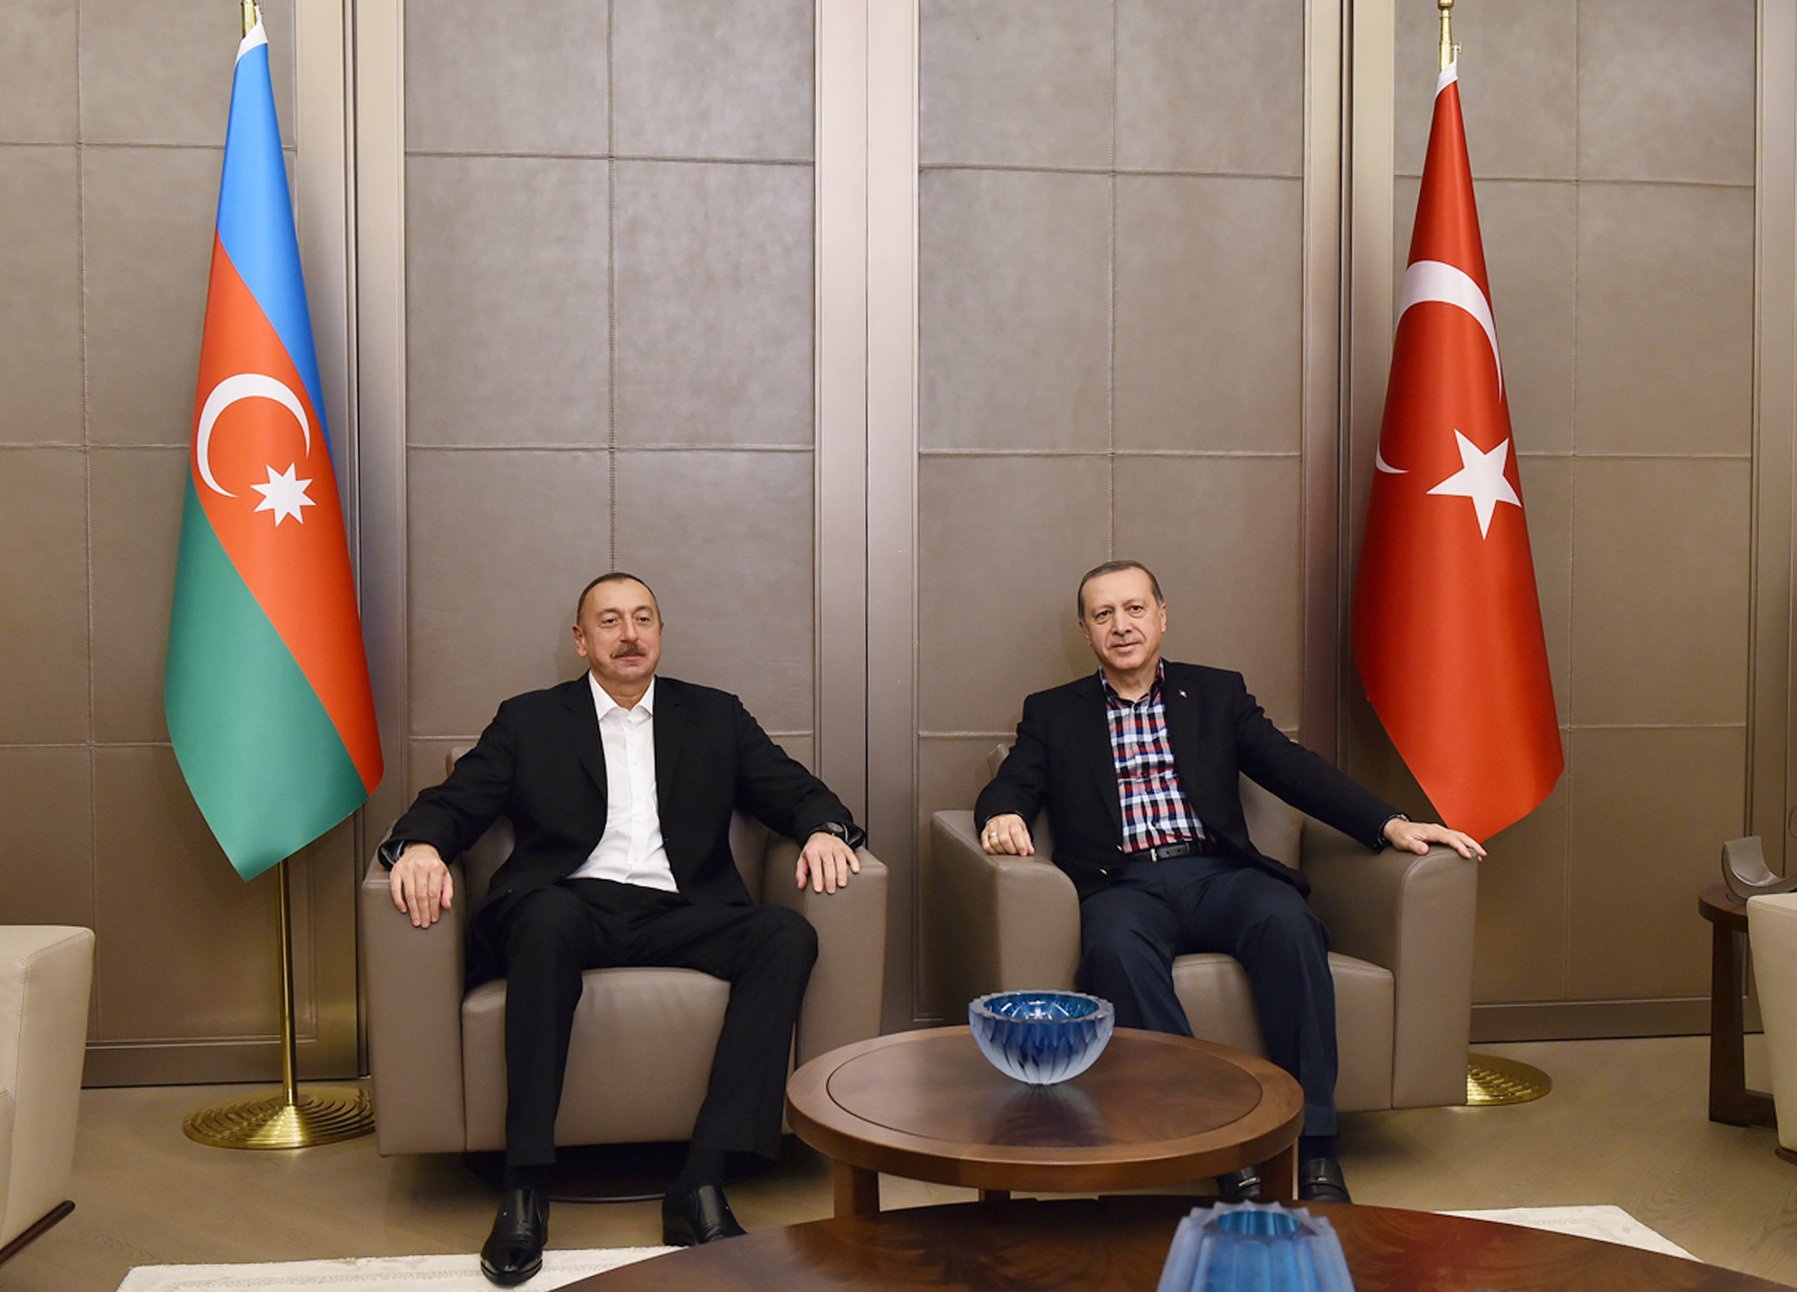 Başbakan Erdoğan’ın Bakü Ziyaretinde Provokasyonlara Dikkat Edilmeli, Kamu Diplomasisi Çalışmaları da Yapılmalıdır 